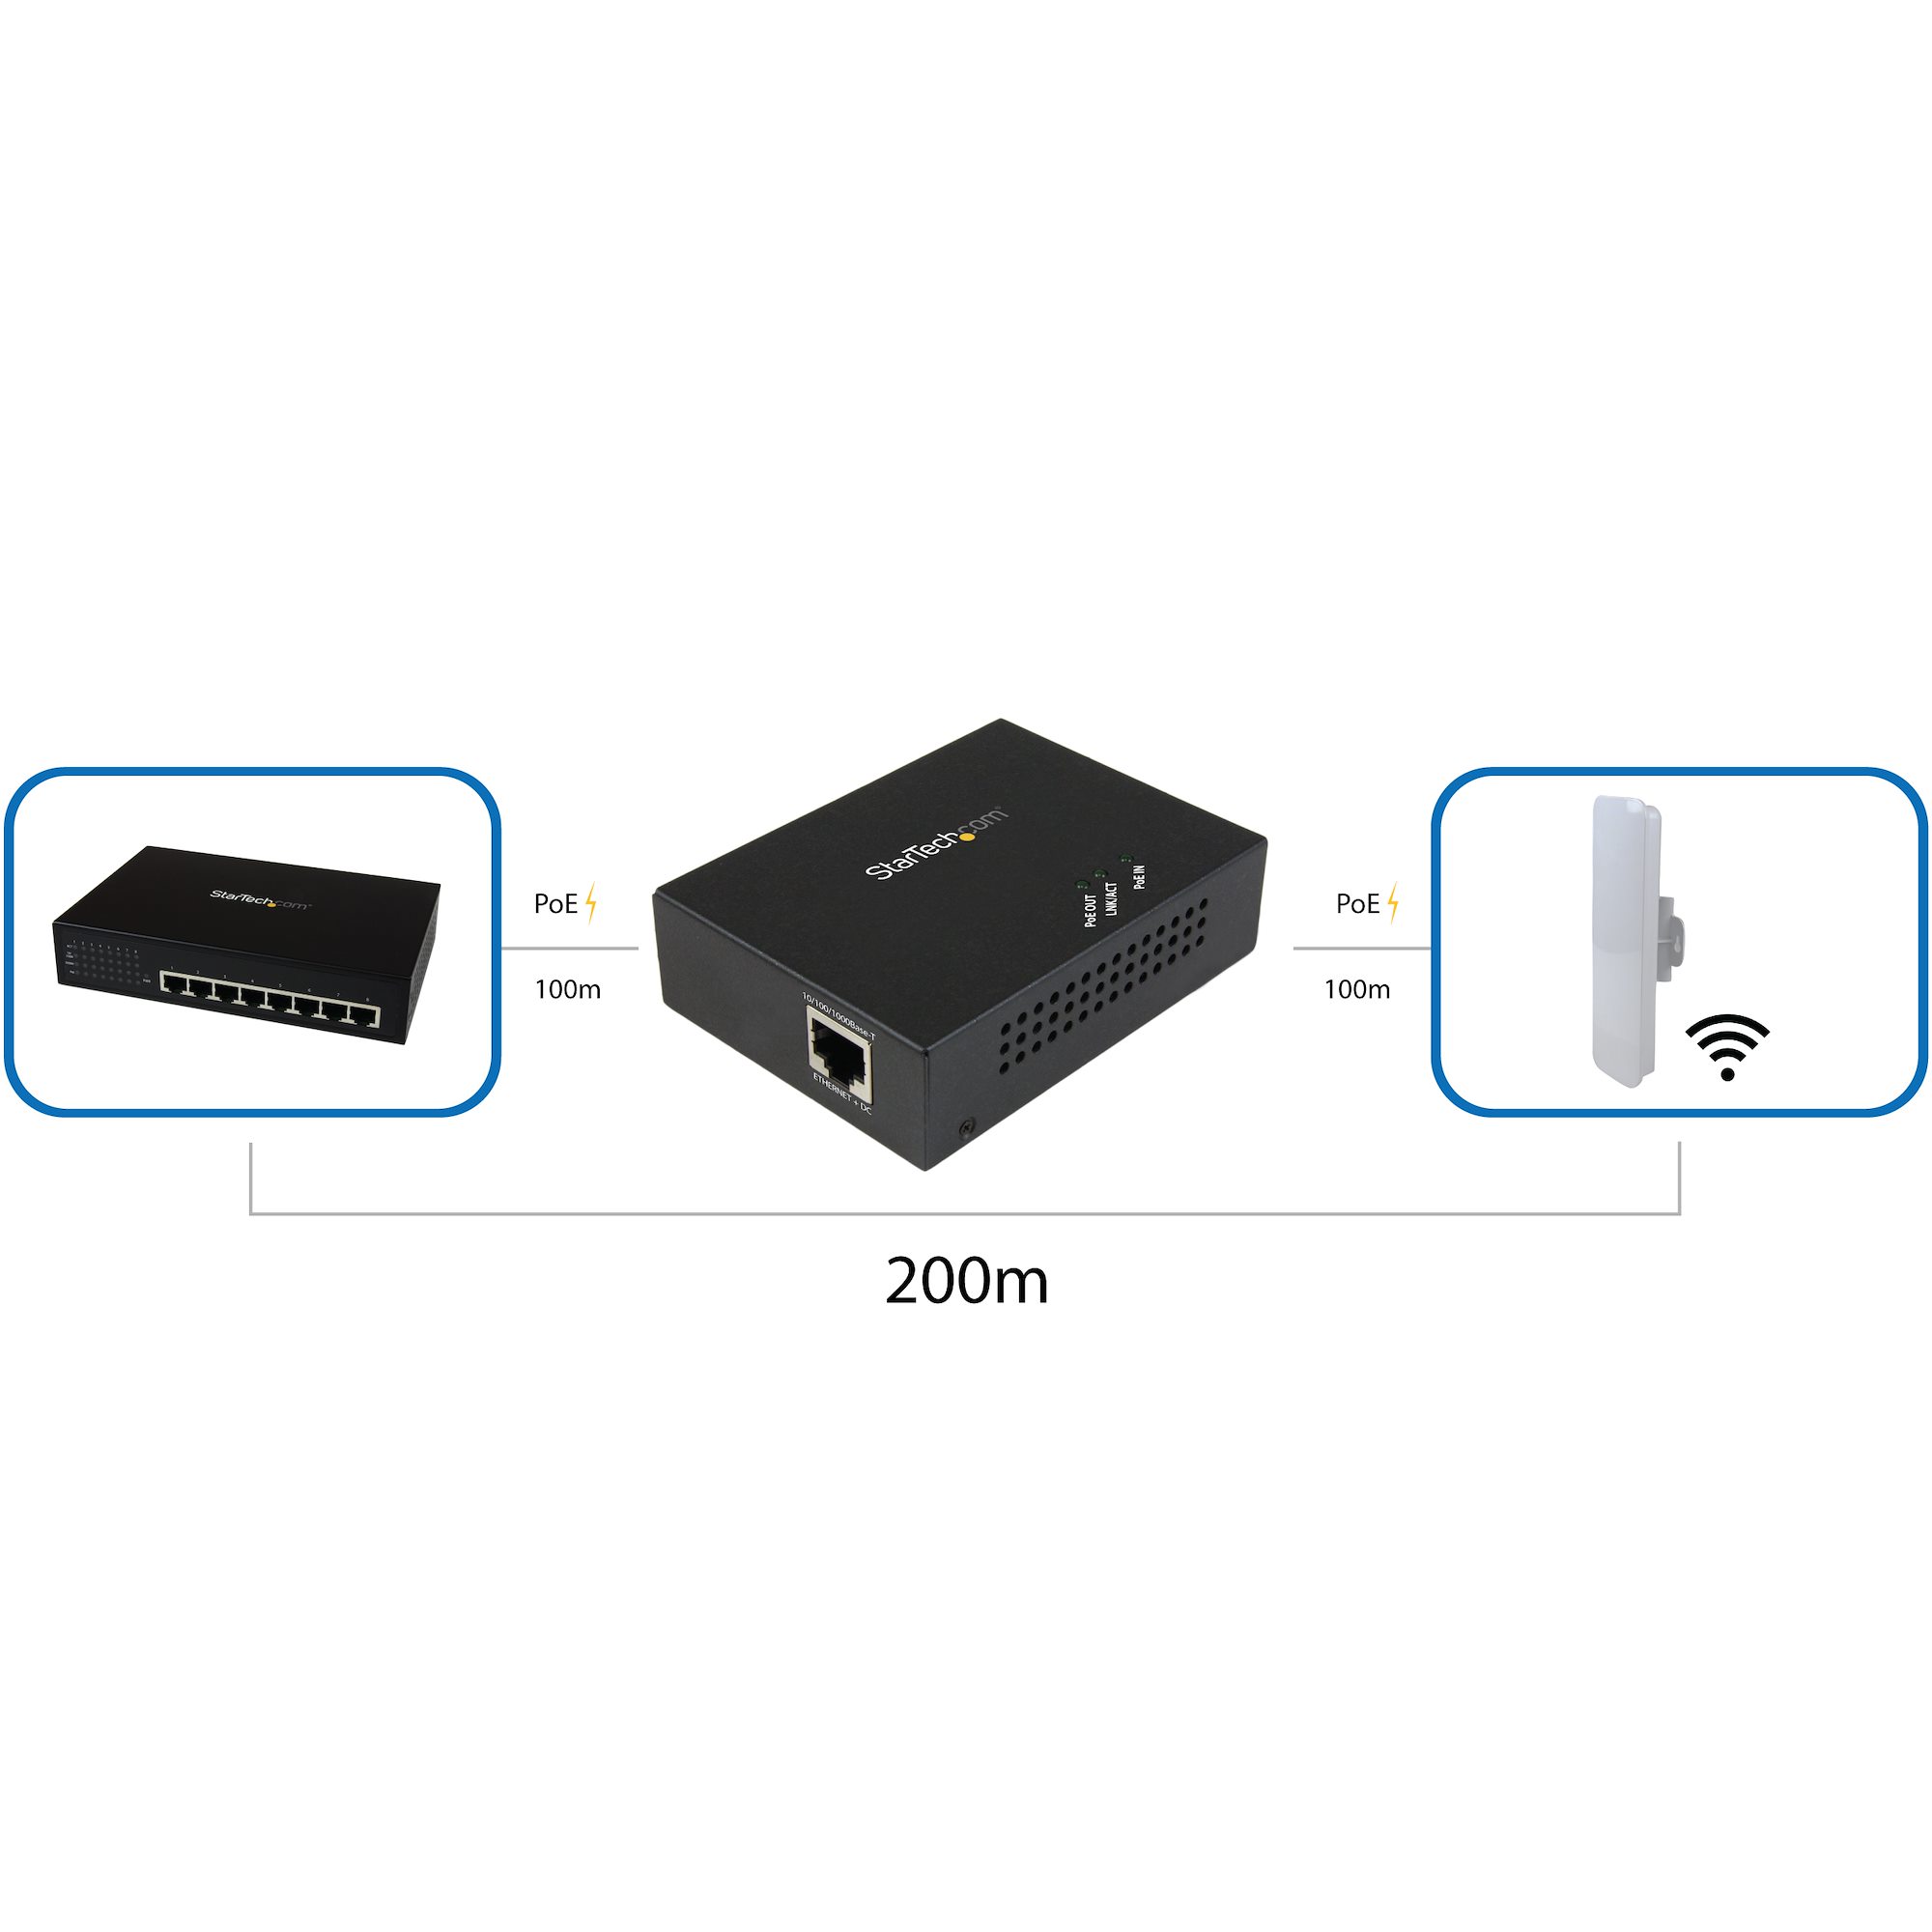 1 Port 10/100M PoE+ Extender 802.3at & 802.3af - 100m (330ft) - Power Over  Ethernet Extender - PoE Repeater Network Extender - Buy 1 Port 10/100M PoE+  Extender 802.3at & 802.3af 